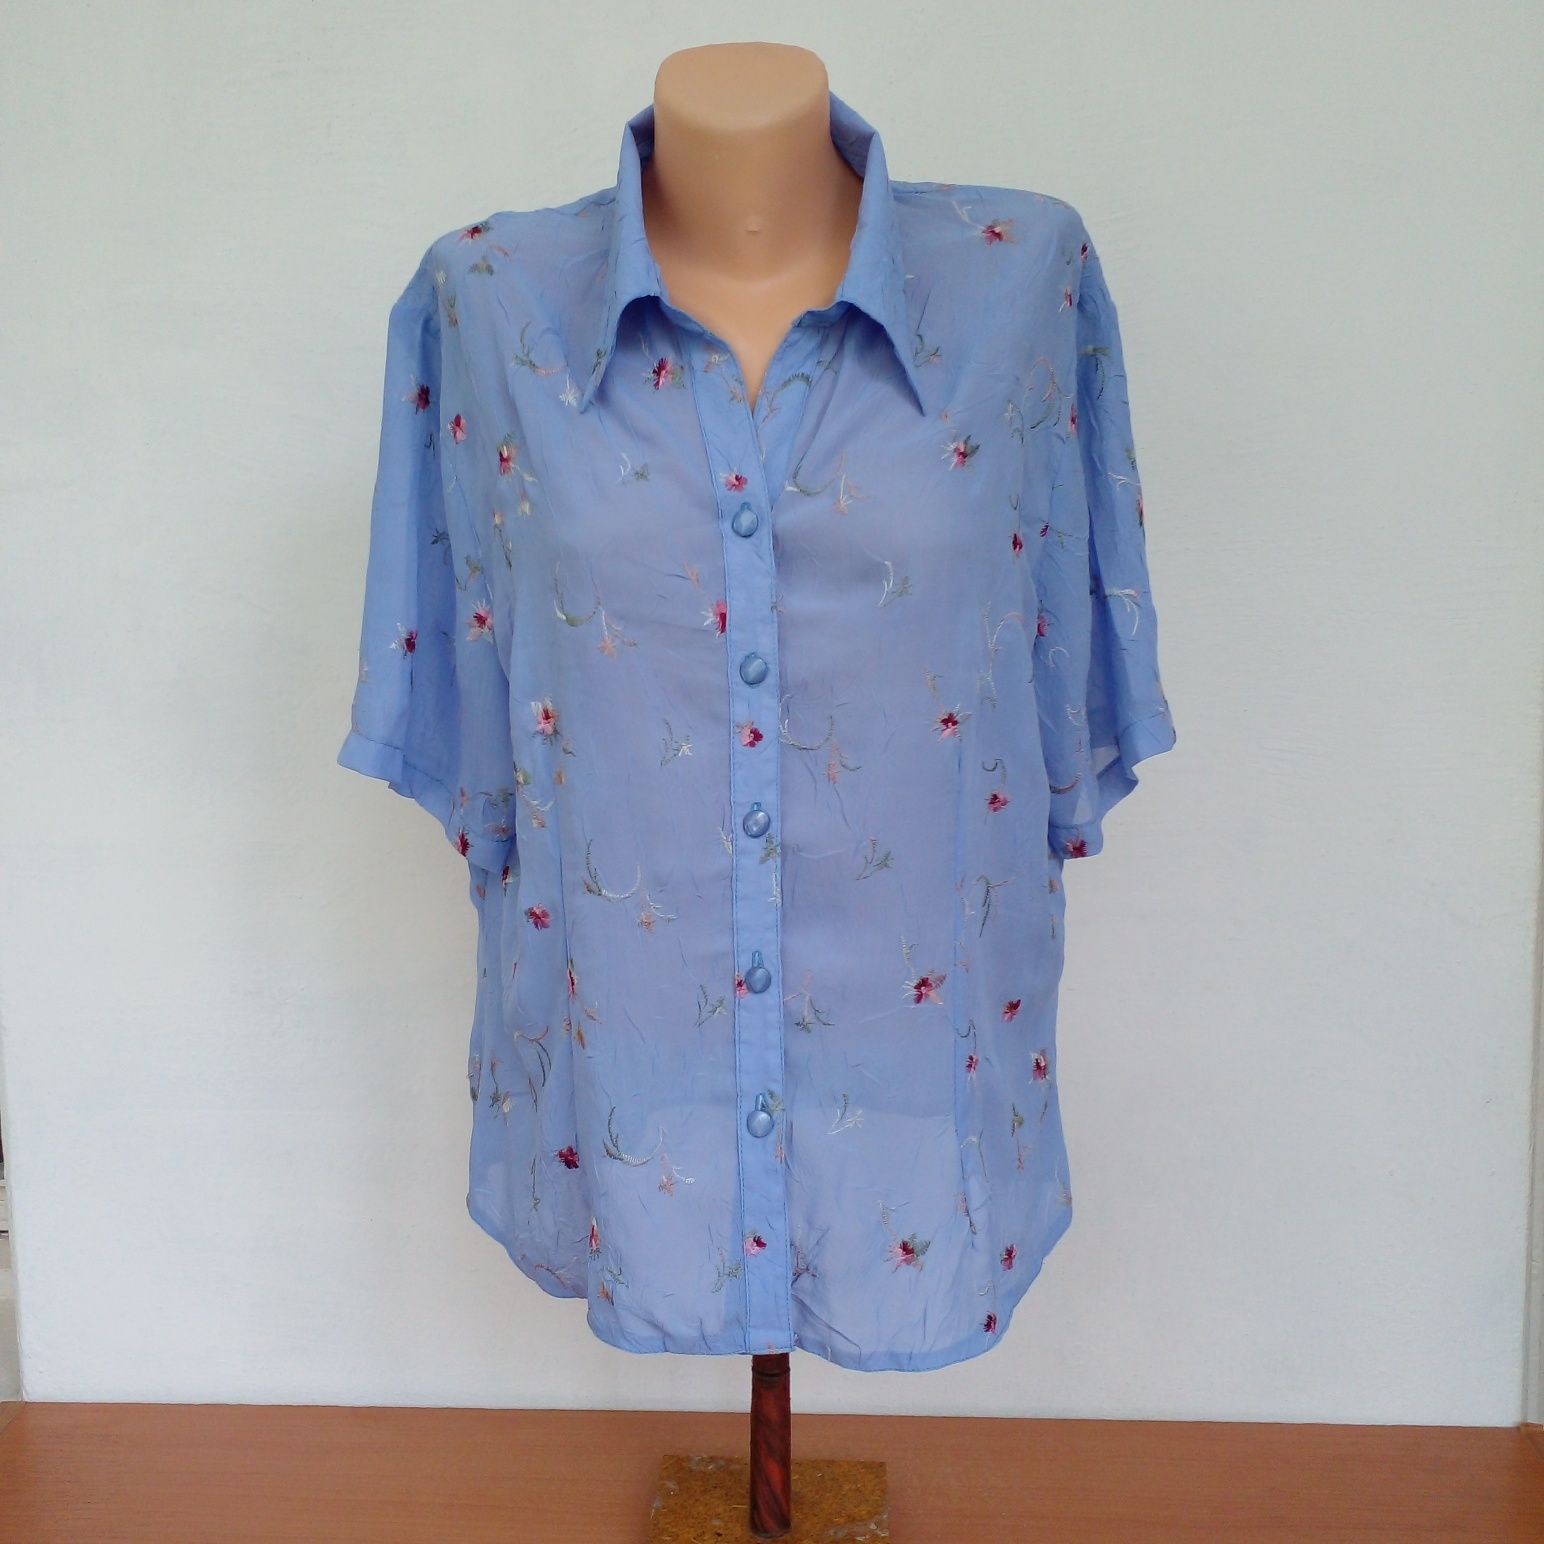 Продам красивую блузку с вышивкой, размер 48-54